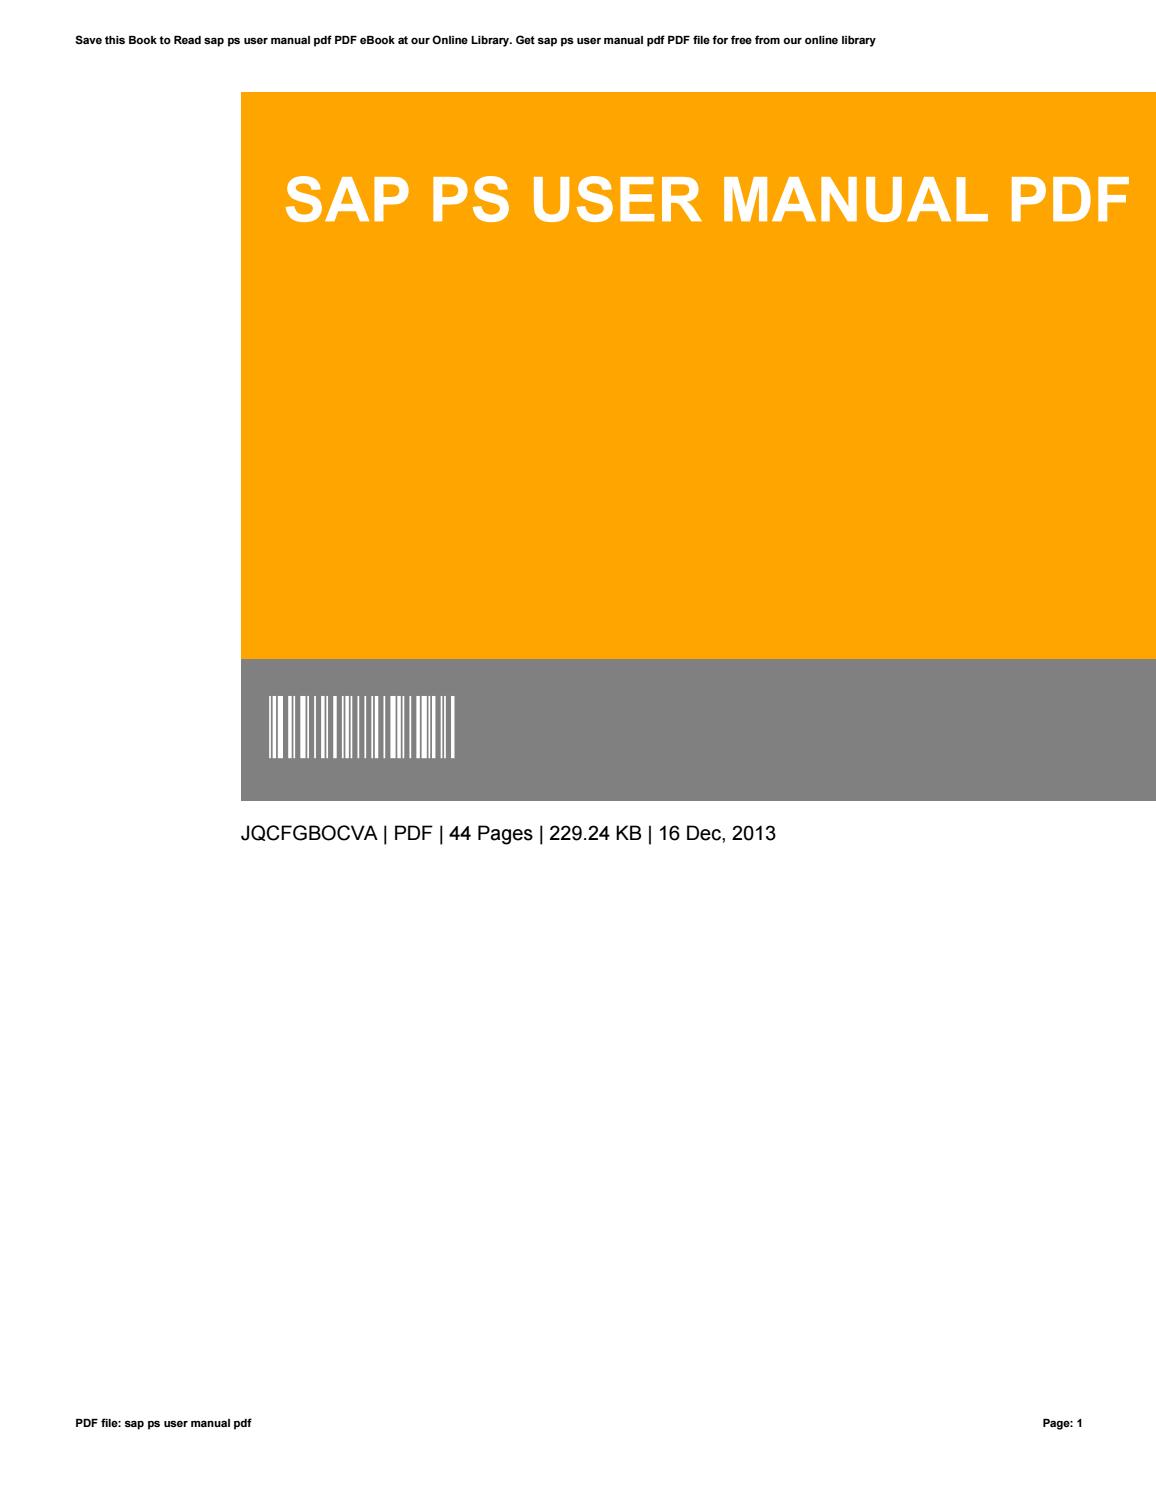 Sap Sd User Manual Pdf Download